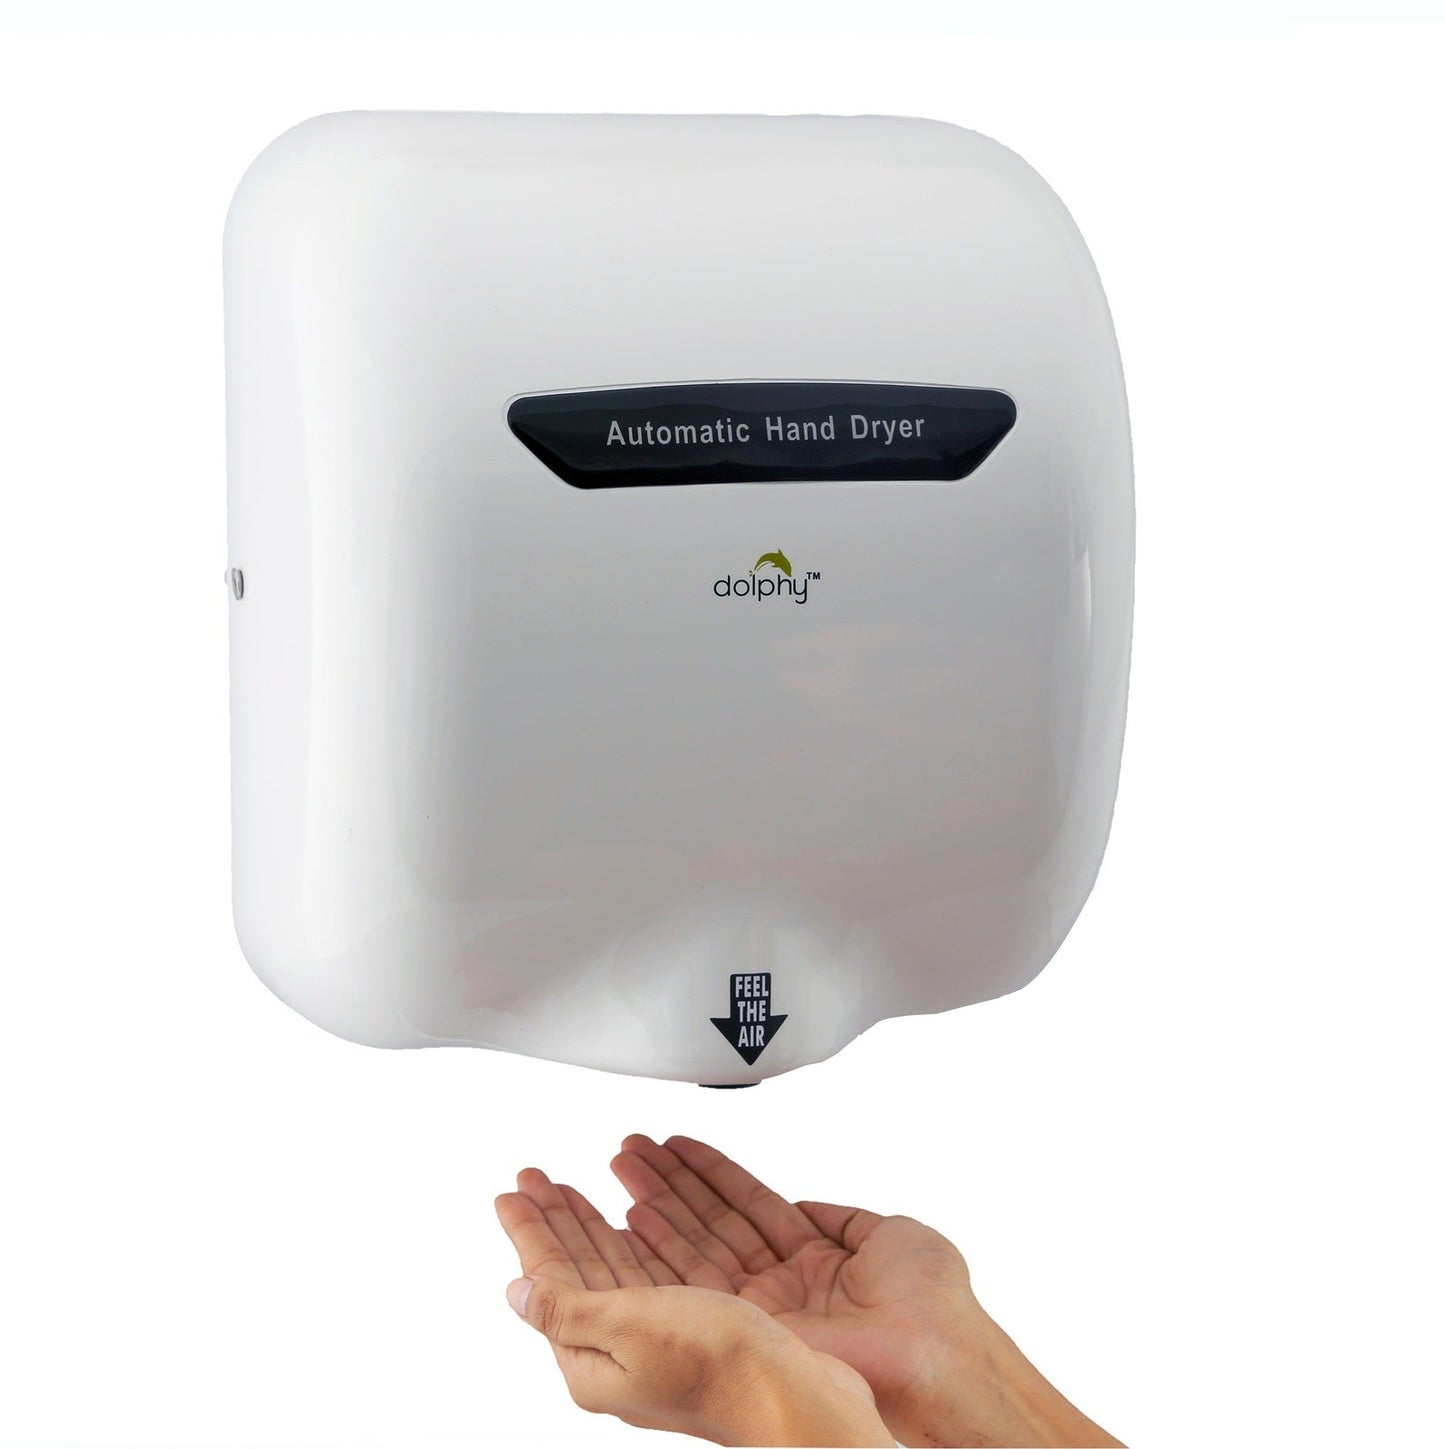 European Style Hand Dryer 1800W - White